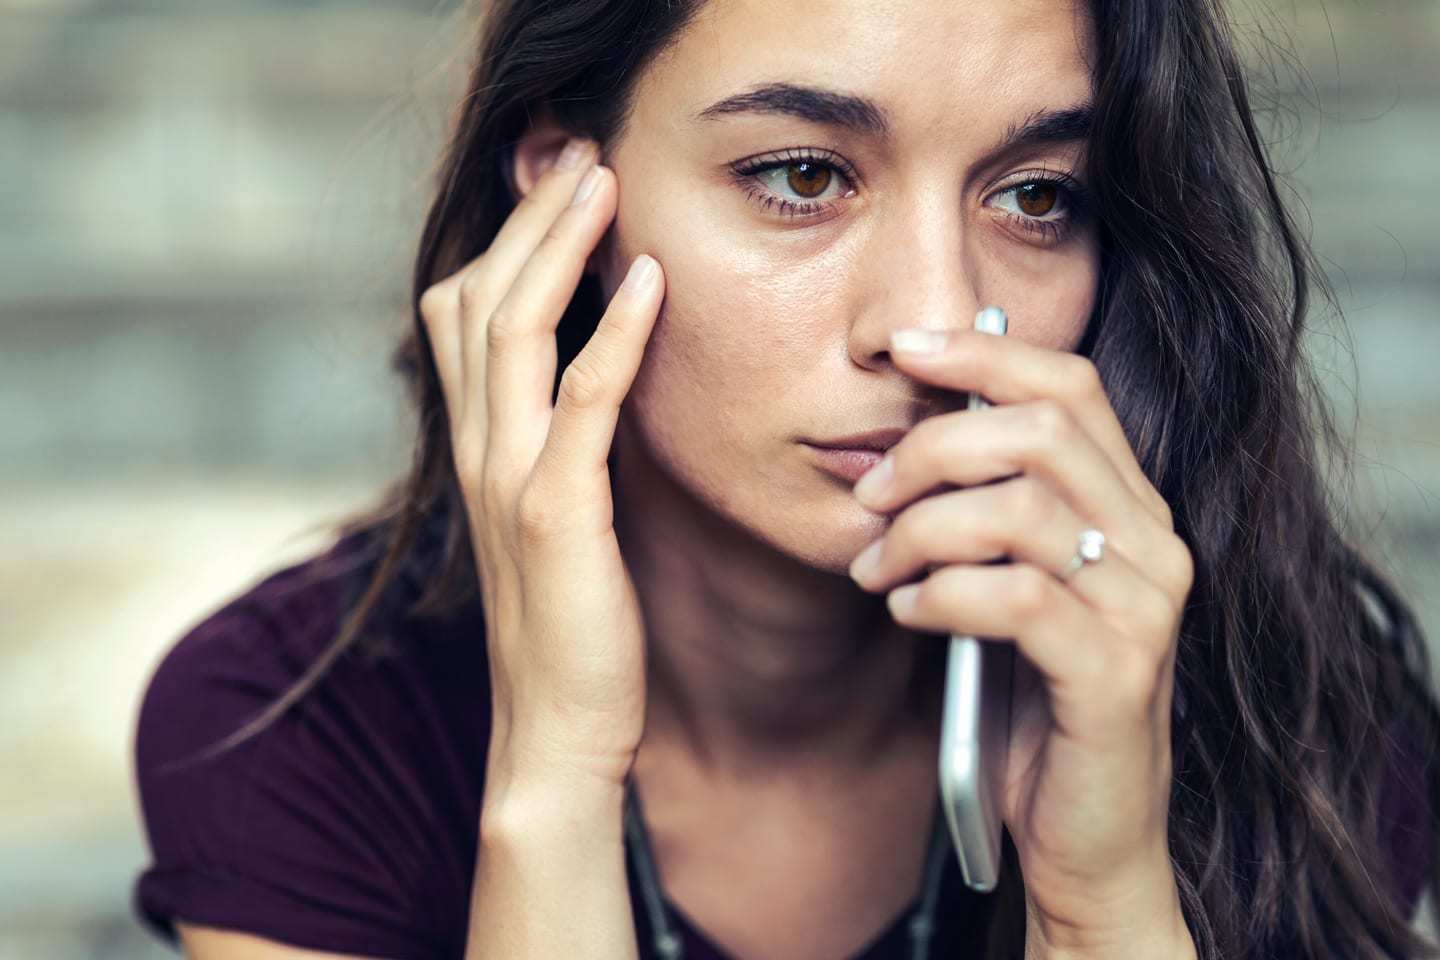 Τα 5 συναισθηματικά στάδια που περνάς μετά από ένα χωρισμό, Ενδοοικογενειακή βία: γιατί οι γυναίκες απλώς δε φεύγουμε;